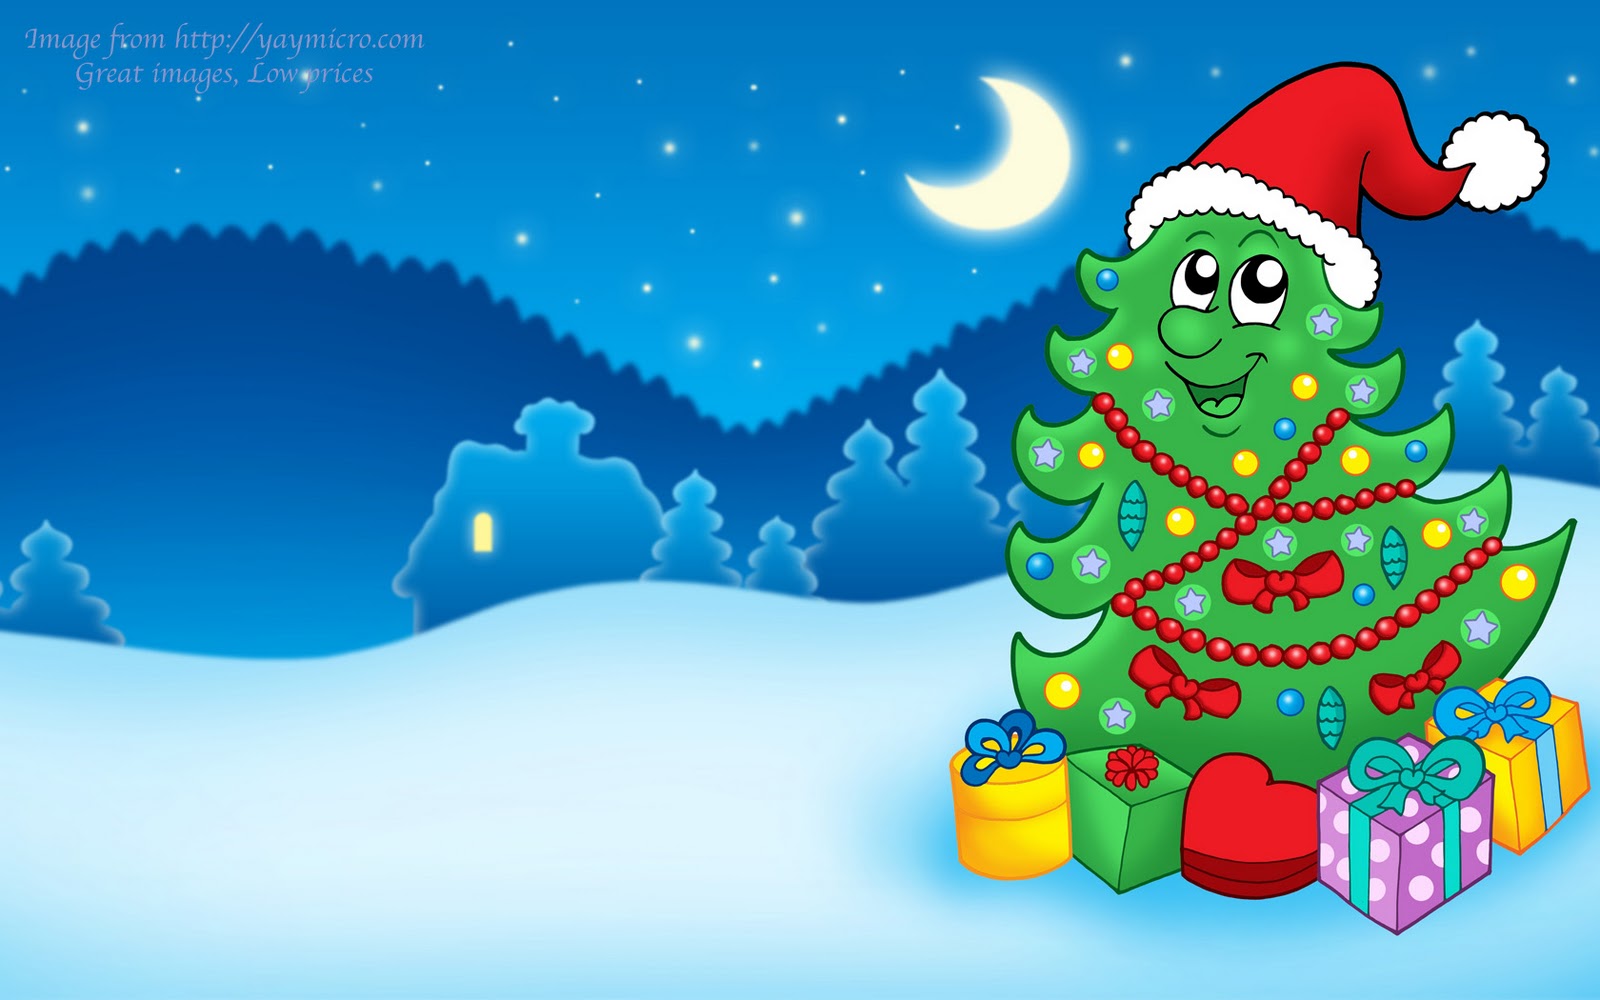 papel tapiz de navidad para niños,árbol de navidad,navidad,dibujos animados,nochebuena,invierno